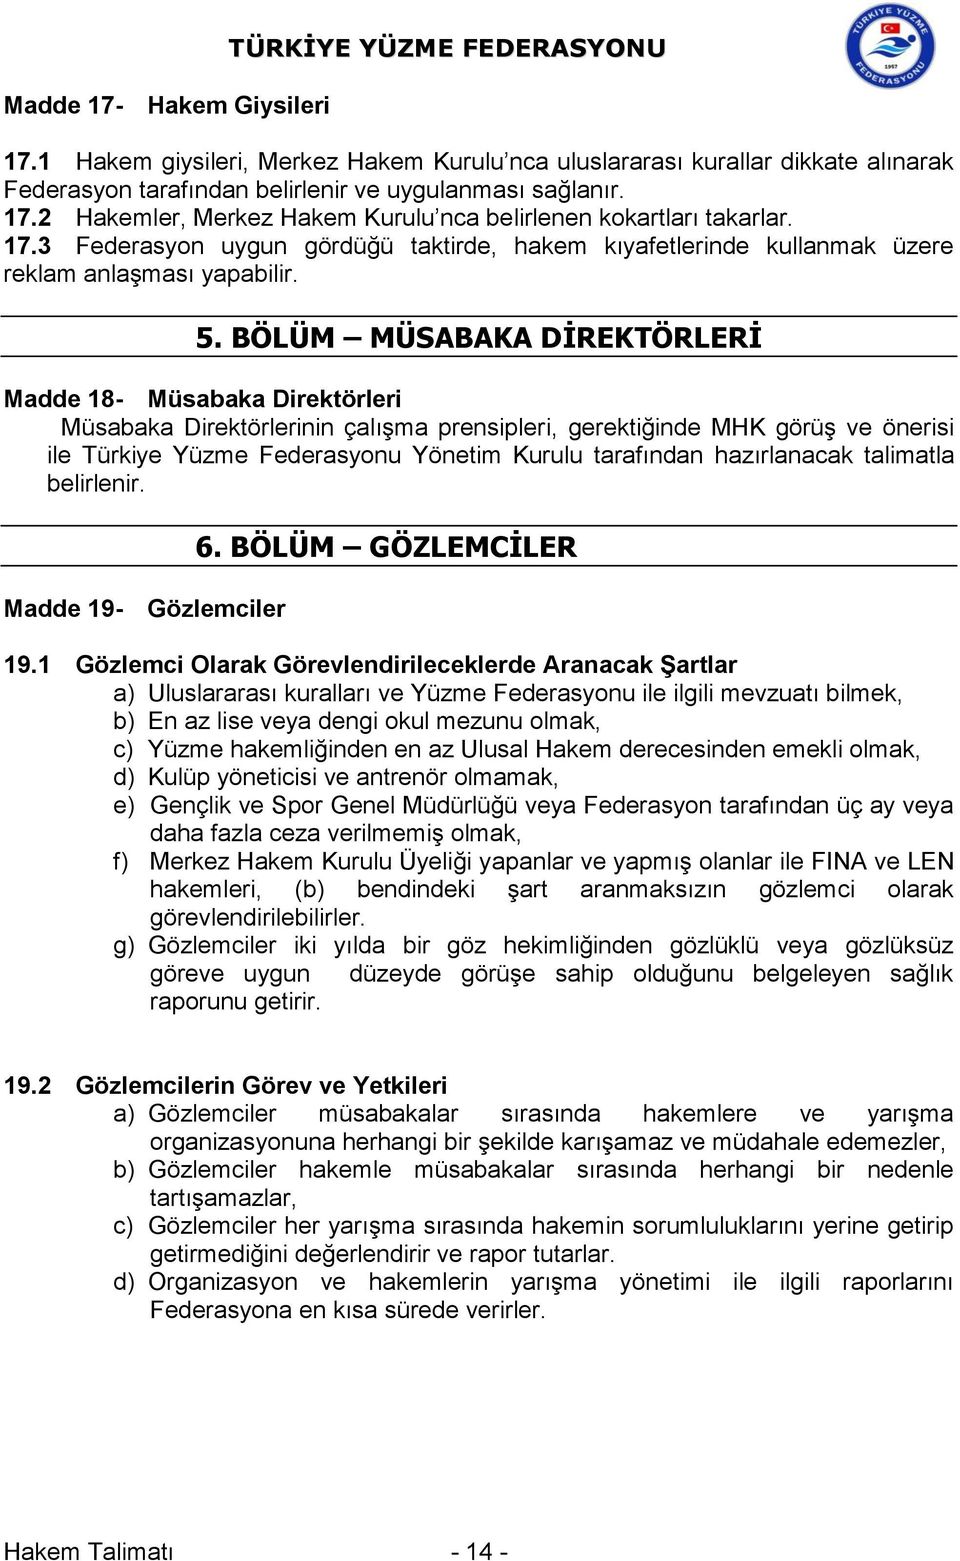 BÖLÜM MÜSABAKA DİREKTÖRLERİ Madde 18- Müsabaka Direktörleri Müsabaka Direktörlerinin çalışma prensipleri, gerektiğinde MHK görüş ve önerisi ile Türkiye Yüzme Federasyonu Yönetim Kurulu tarafından